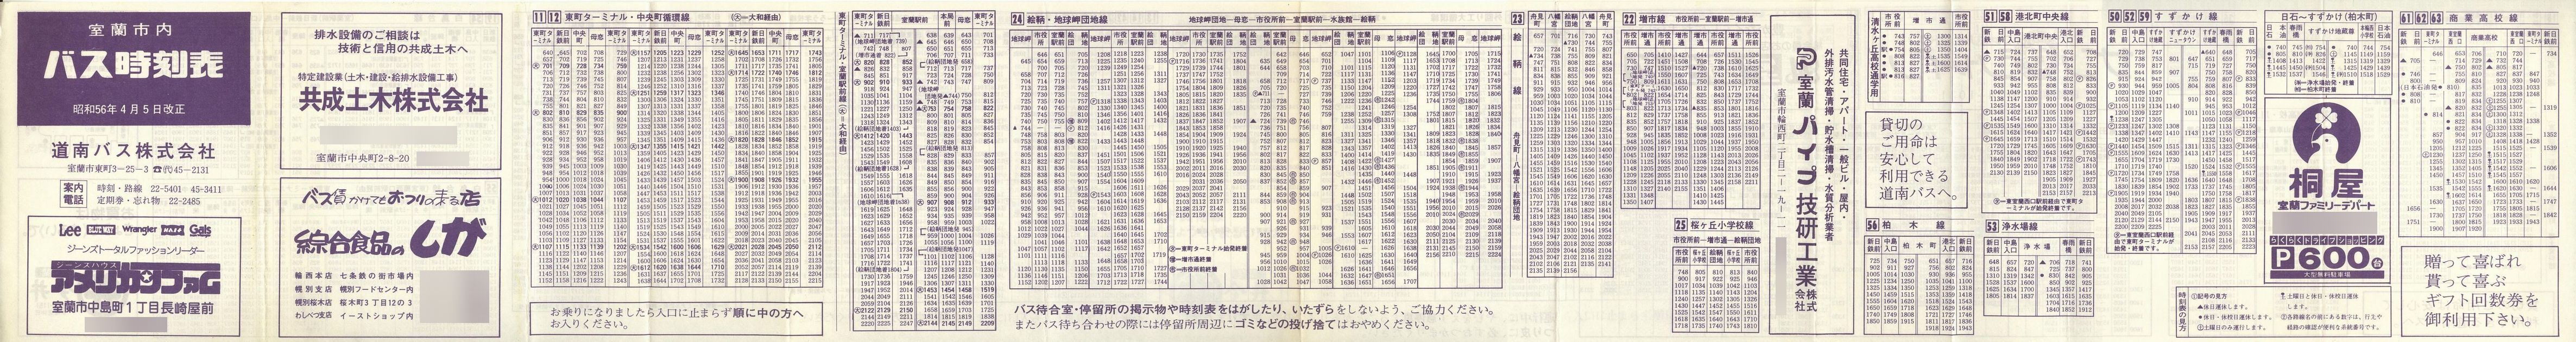 1981-04-05改正_道南バス_室蘭市内線時刻表表面